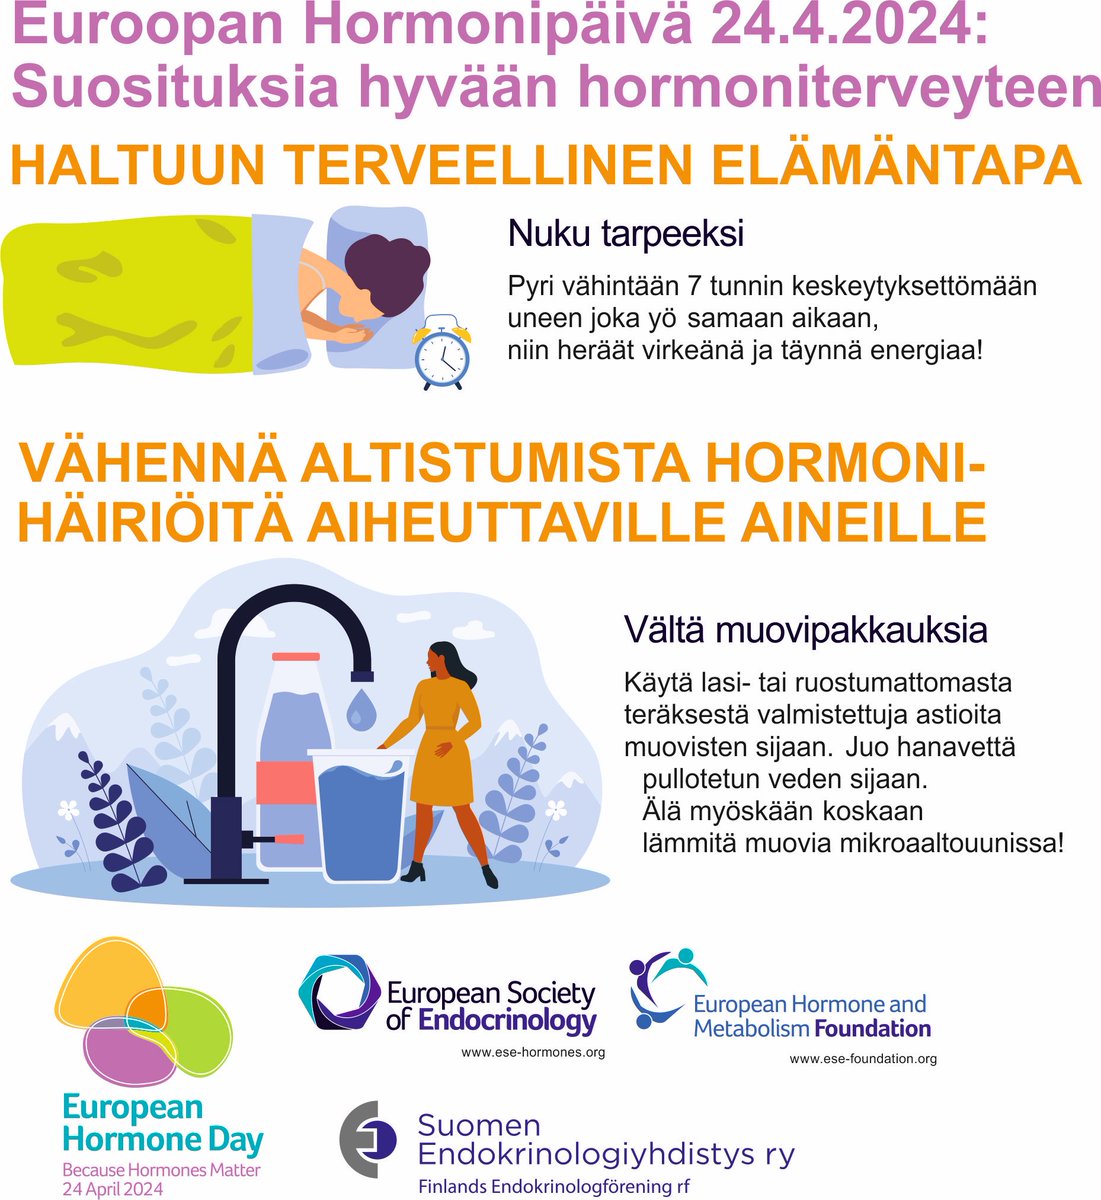 Tänään vietetään Euroopan hormonipäivää! Tutkimusryhmäni Itä-Suomen yliopistossa (@UniEastFinland) tutkii hormoneja ja niihin liittyviä tauteja. 

@ESEndocrinology
#EuropeanHormoneDay 
#BecauseHormonesMatter